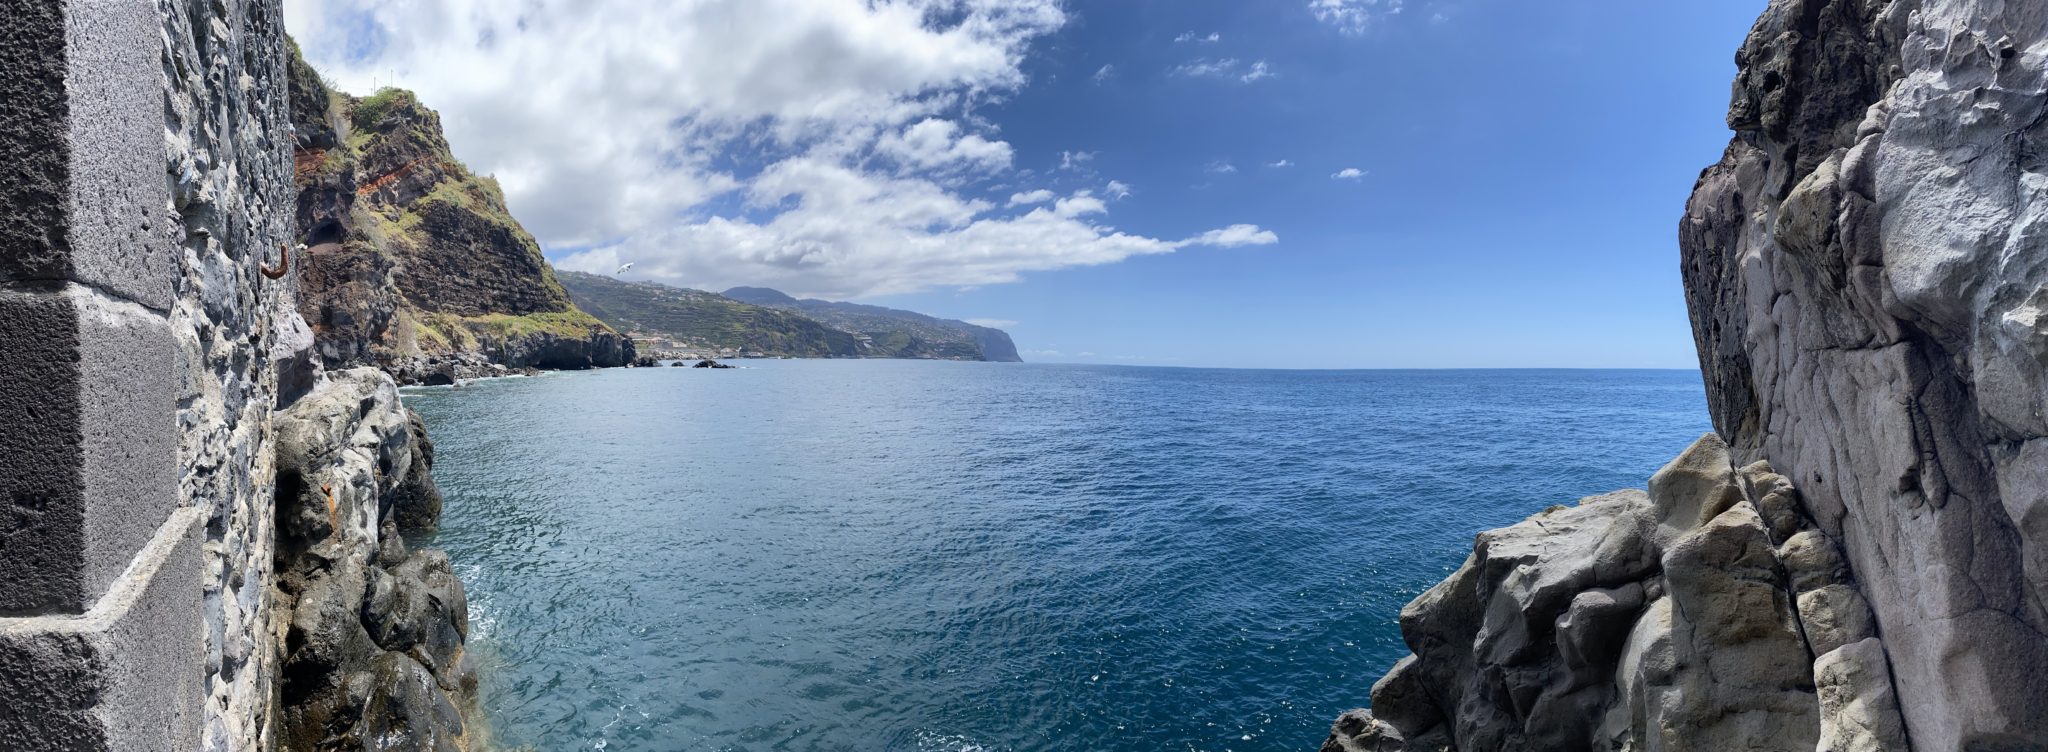 Madeira: echt een bijzondere vakantiebestemming!